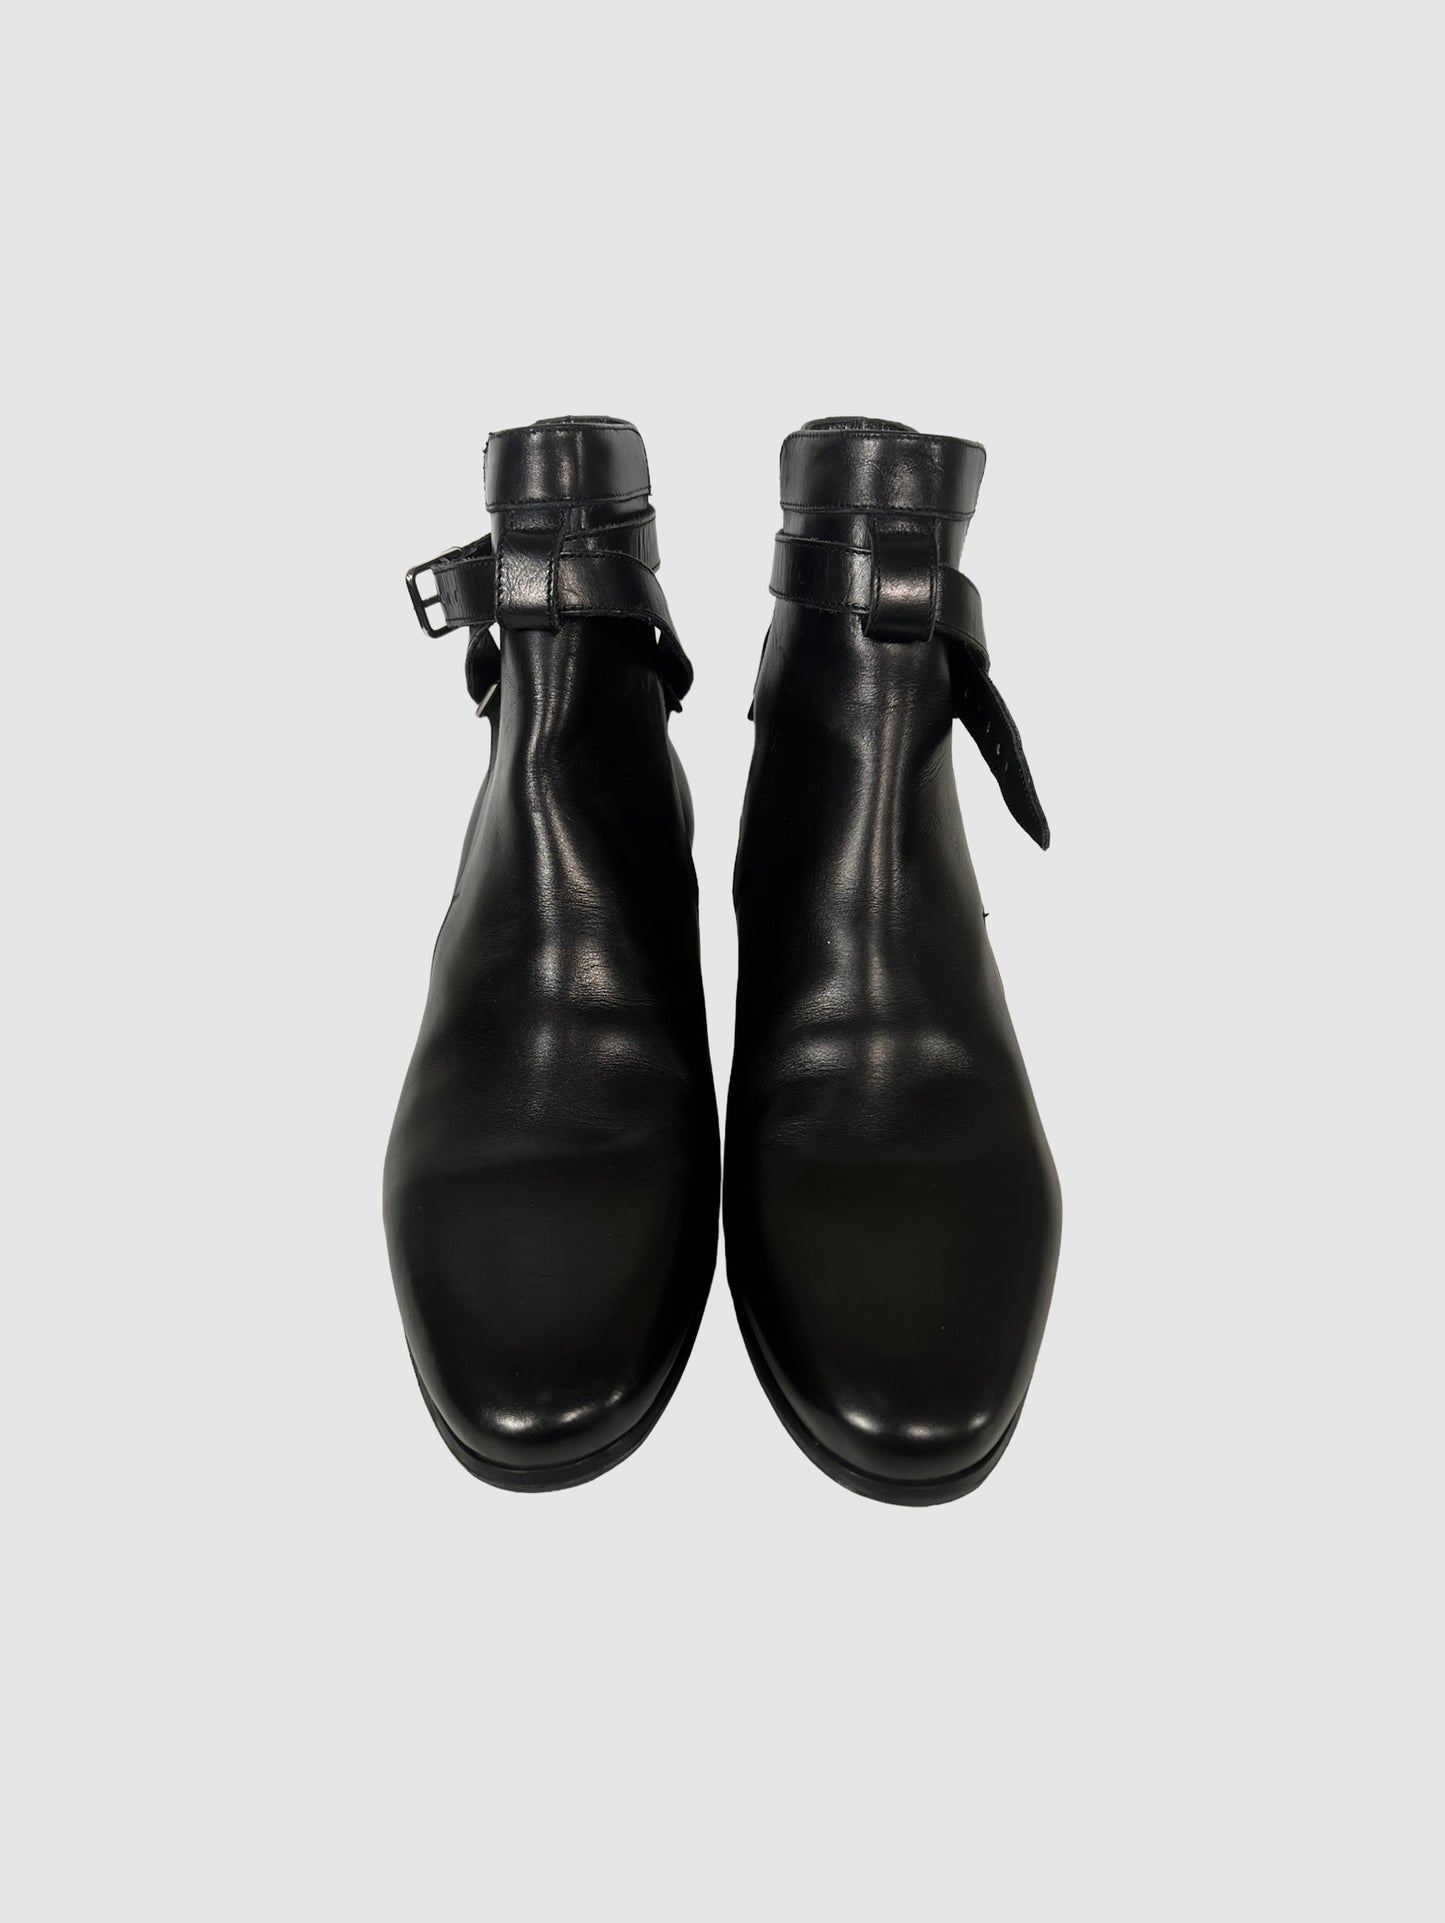 Saint Laurent Johdpur Ankle Boots - Size 36.5